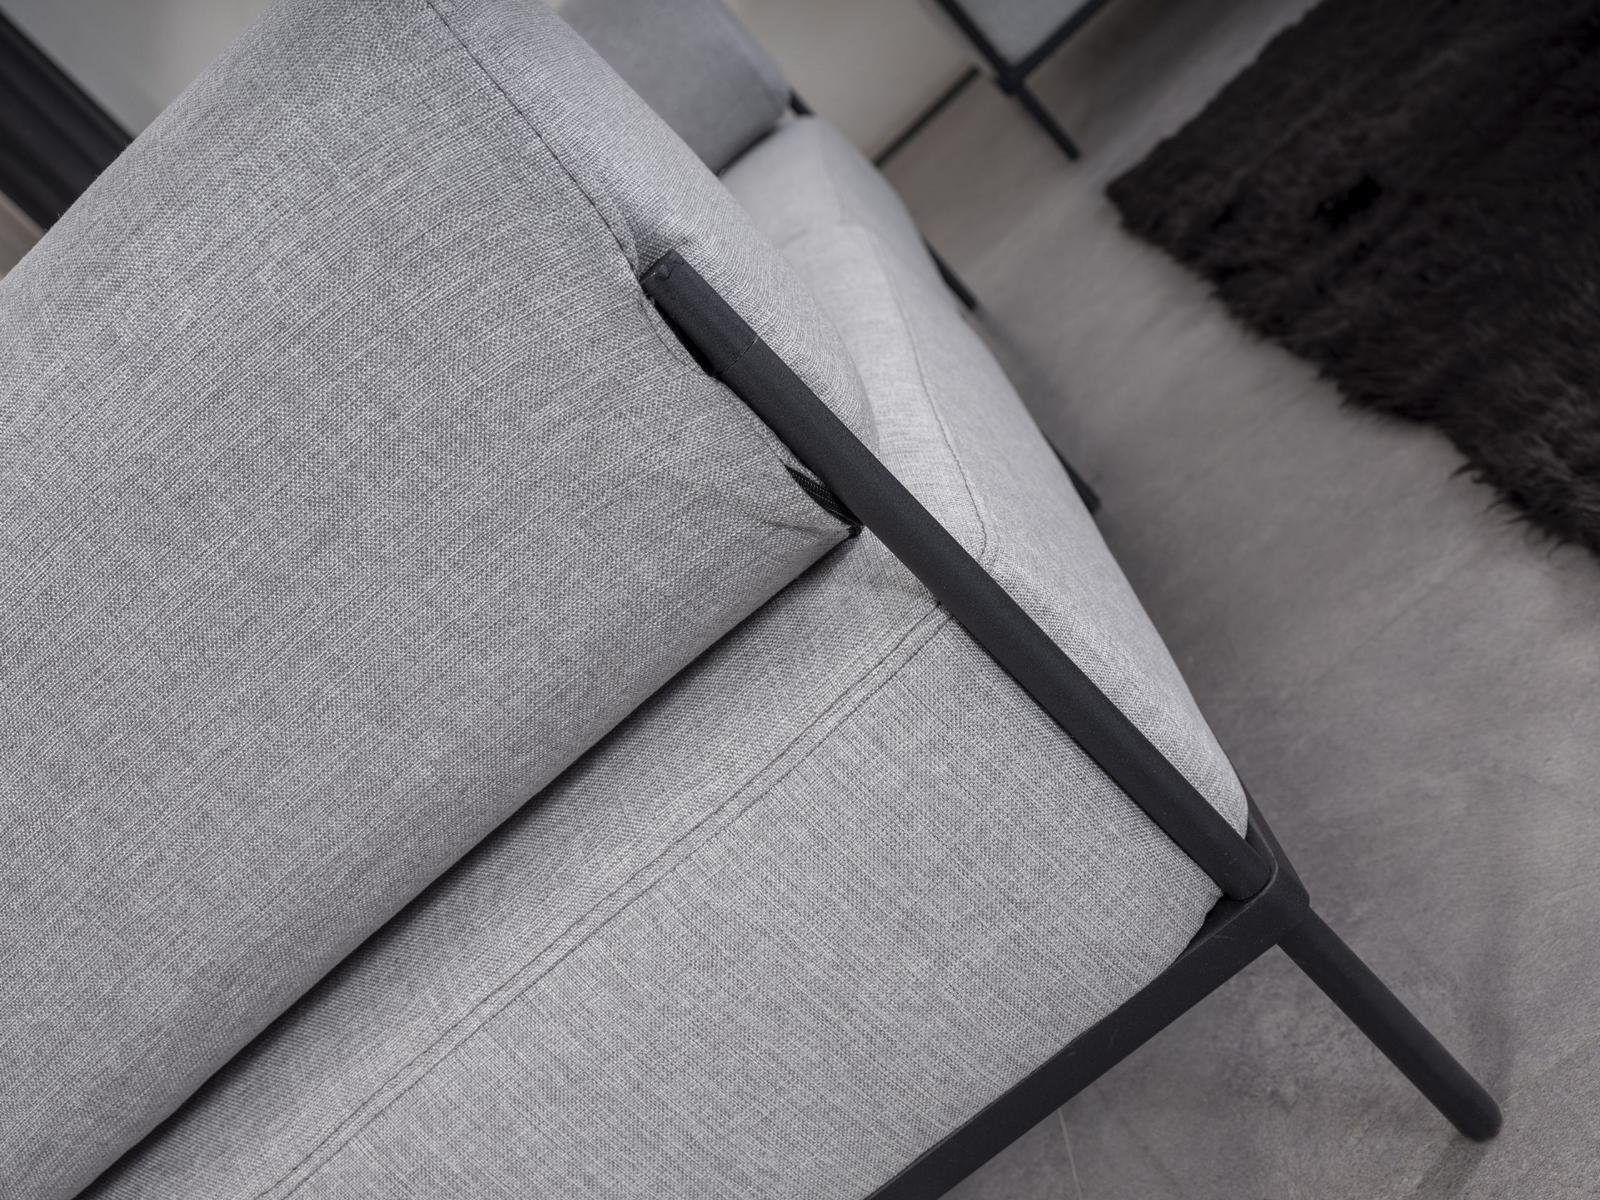 JVmoebel Sofa Wohnzimmer Sofa Dreisitzer Made Teile, Europa Grau 3 in Einrichtung, Polstermöbel Couch Luxus